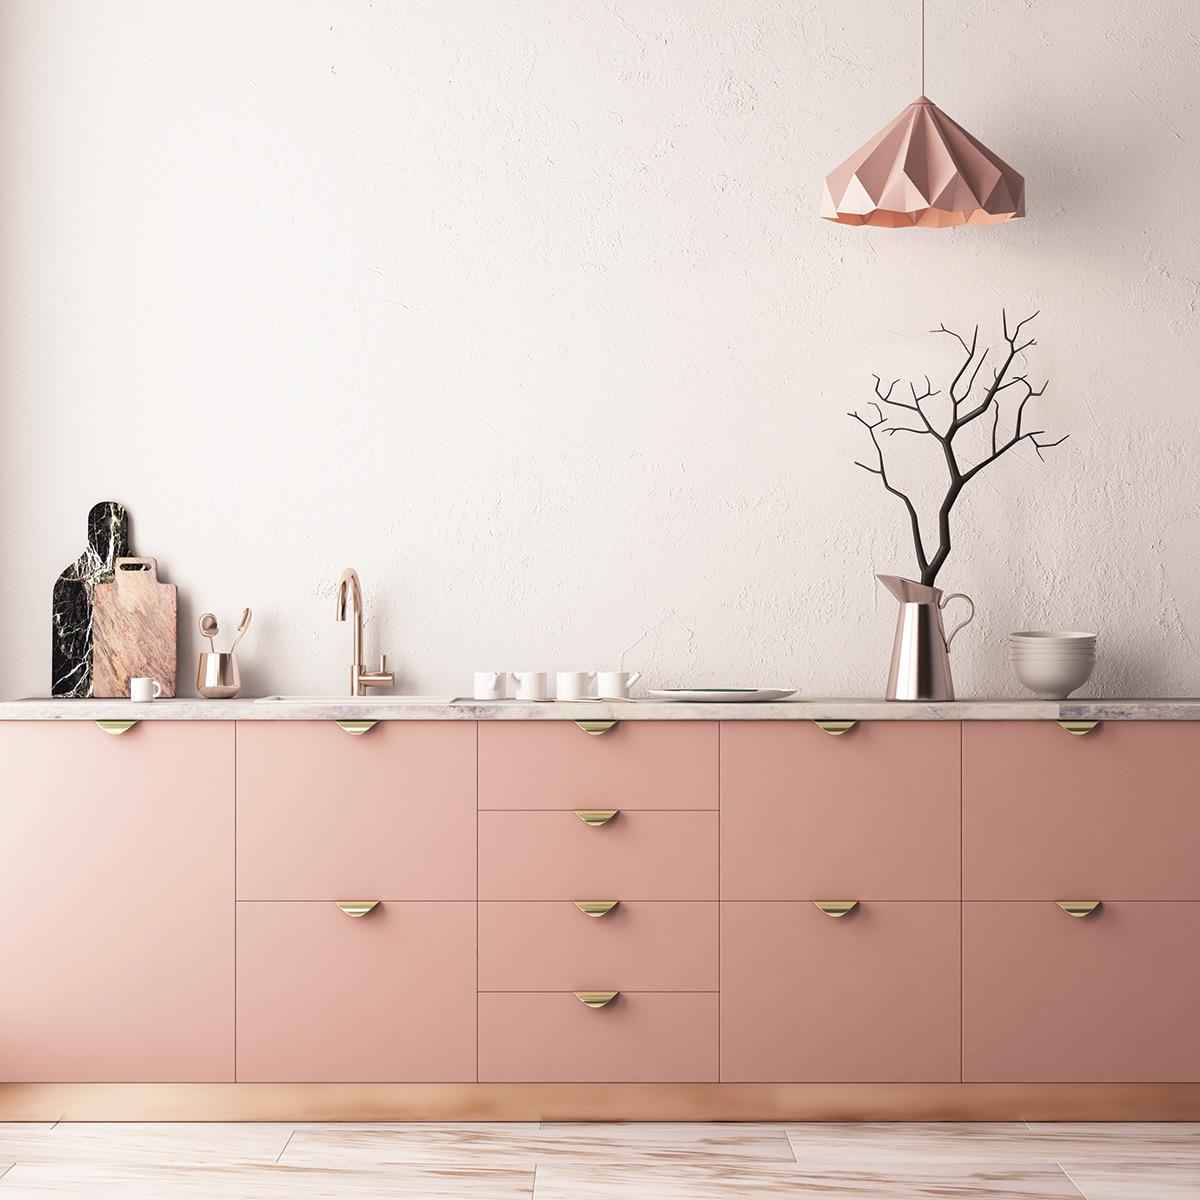 20 идей кухонь в розовом цвете 18 | Дока-Мастер